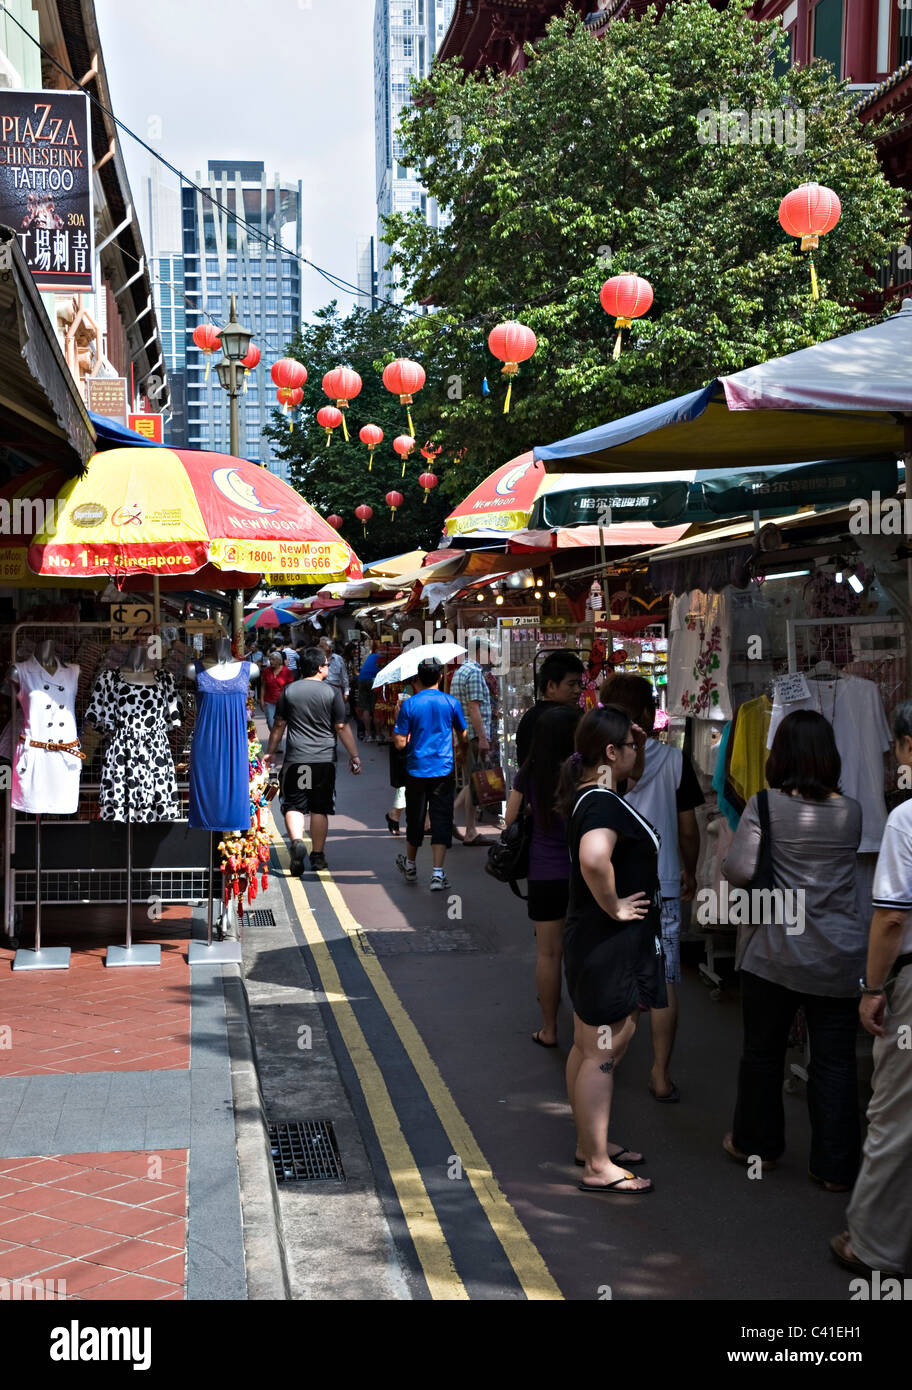 Les étals de marché en plein air animé de Chinatown Singapour République de Singapour Asie Banque D'Images